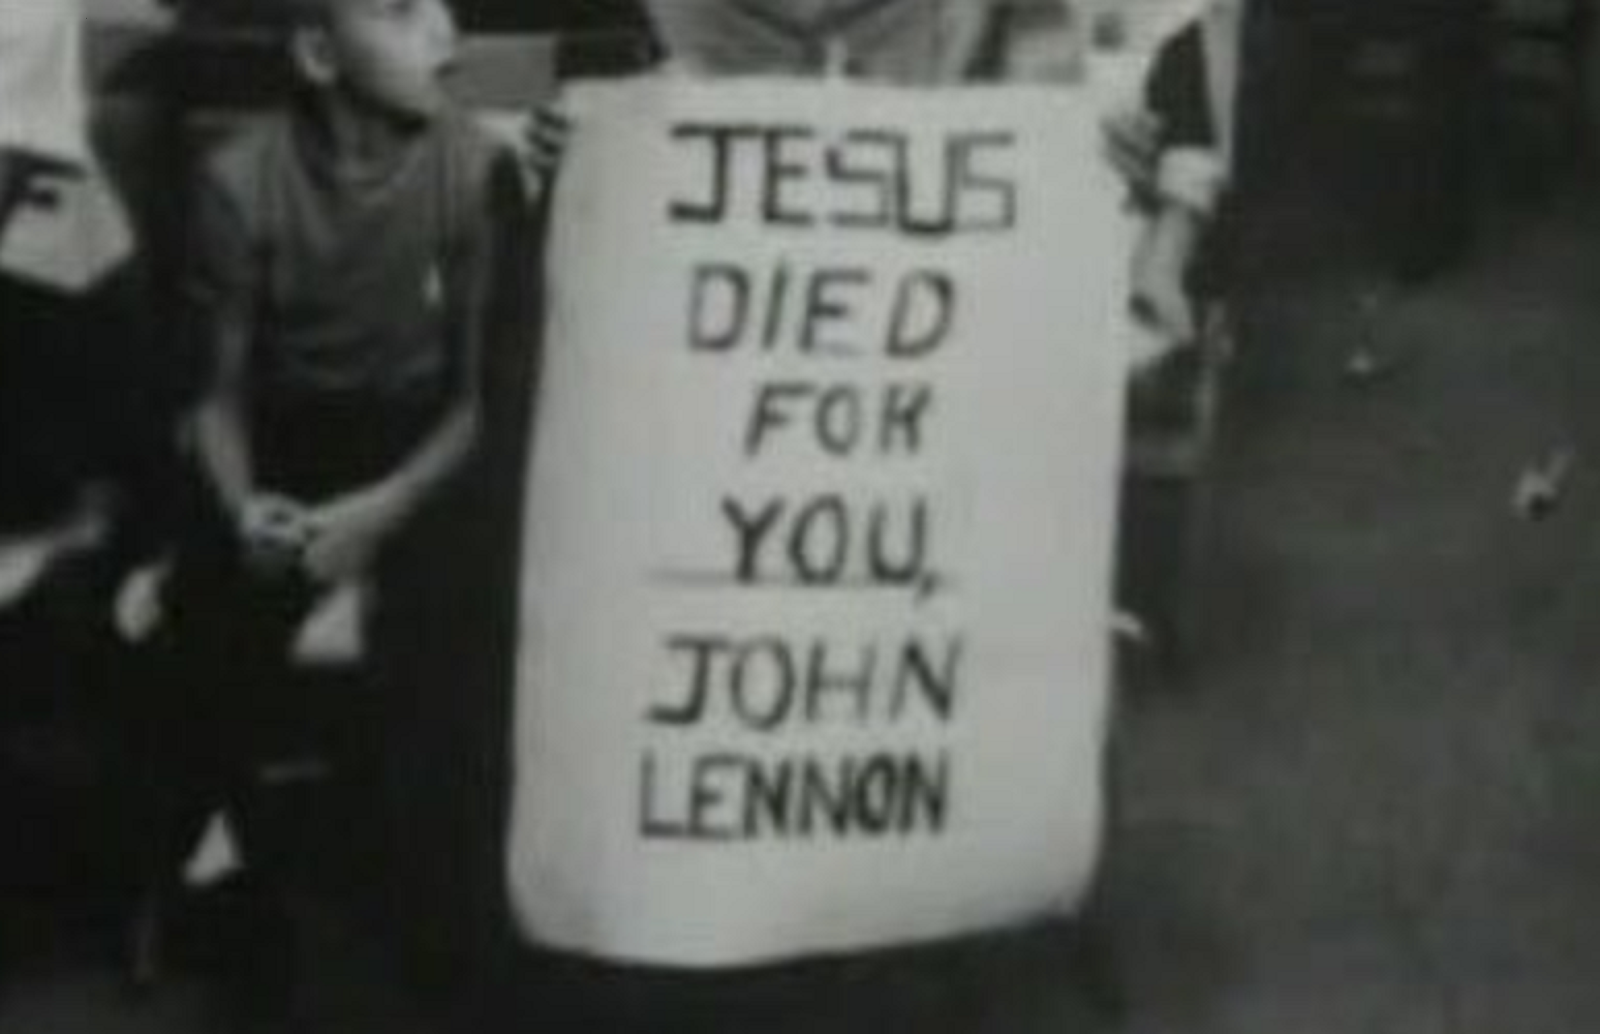 JESUS DIED FOR YOU JOHN LENNON